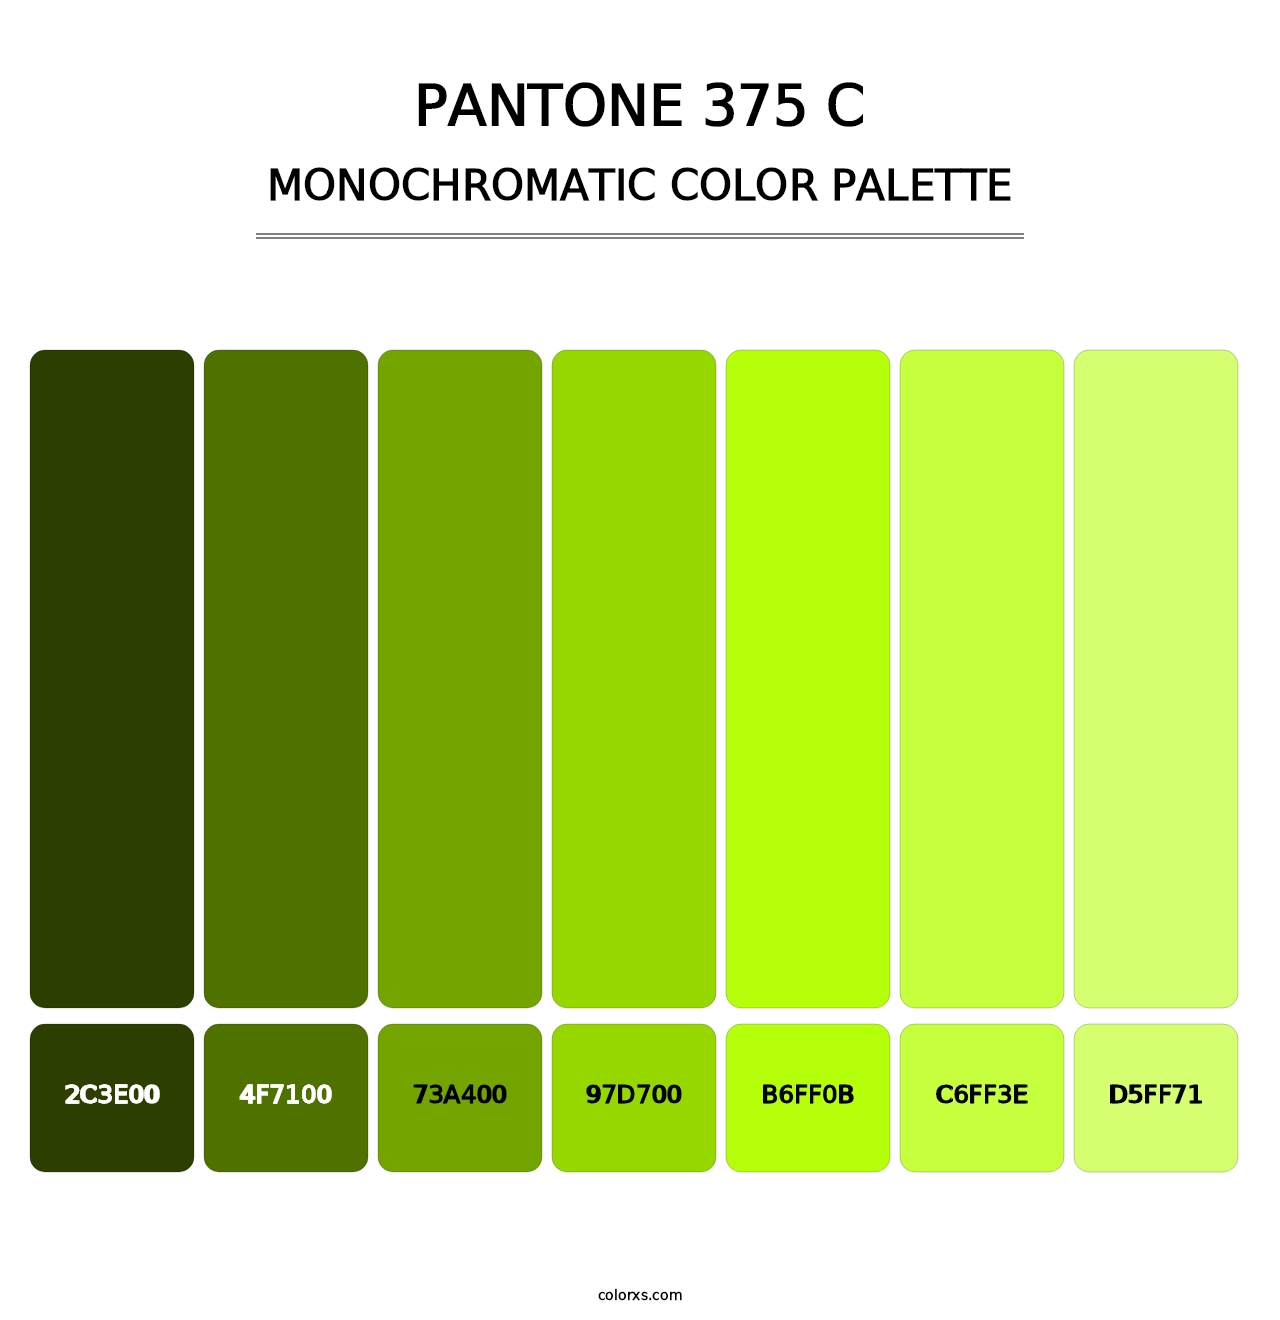 PANTONE 375 C - Monochromatic Color Palette